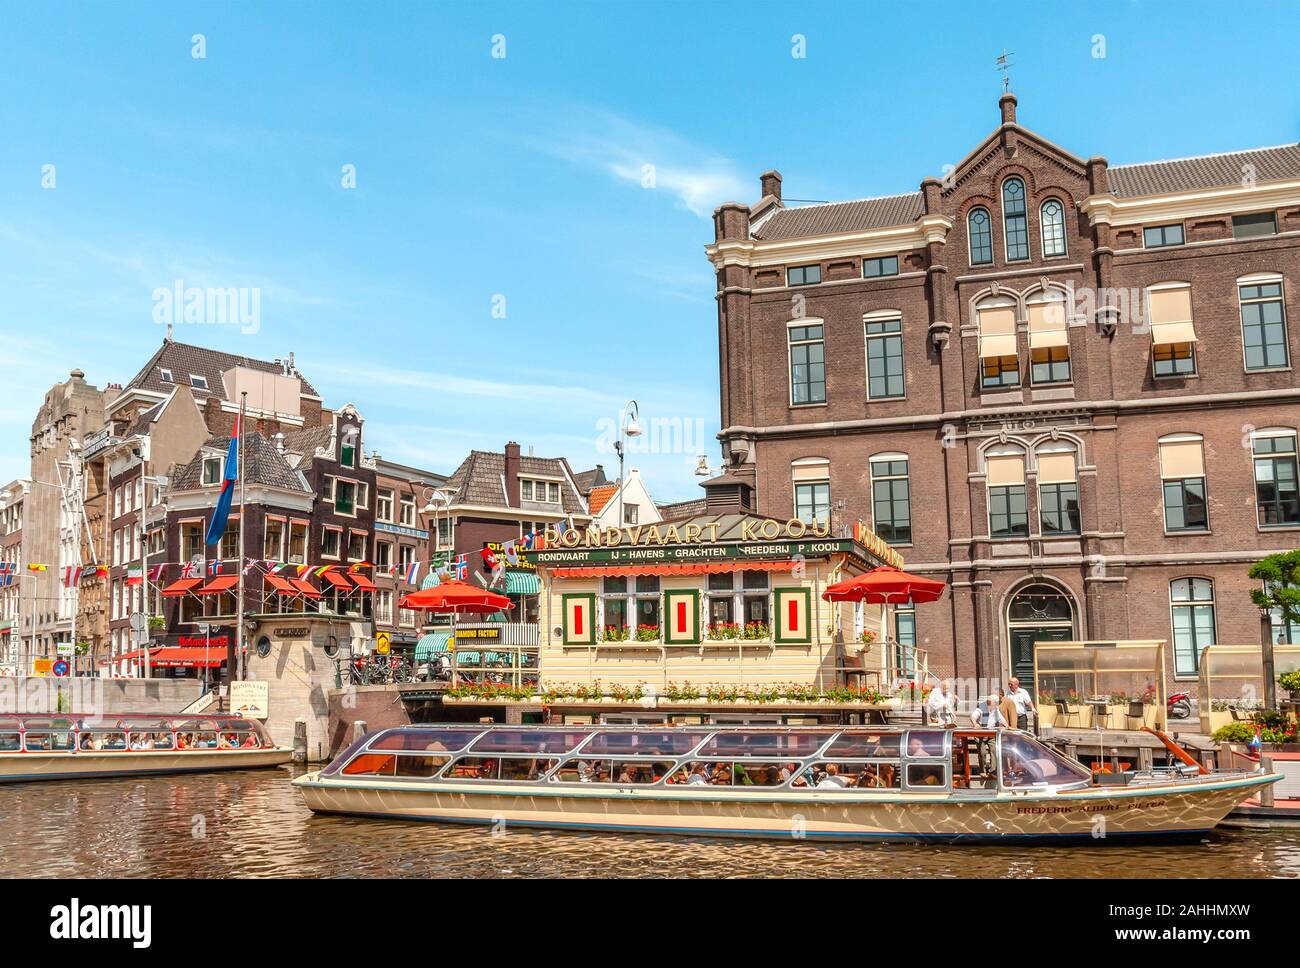 Typische Sightseeing-Boote in einem Wasserkanal in das Stadtzentrum von Amsterdam, Niederlande. Stockfoto